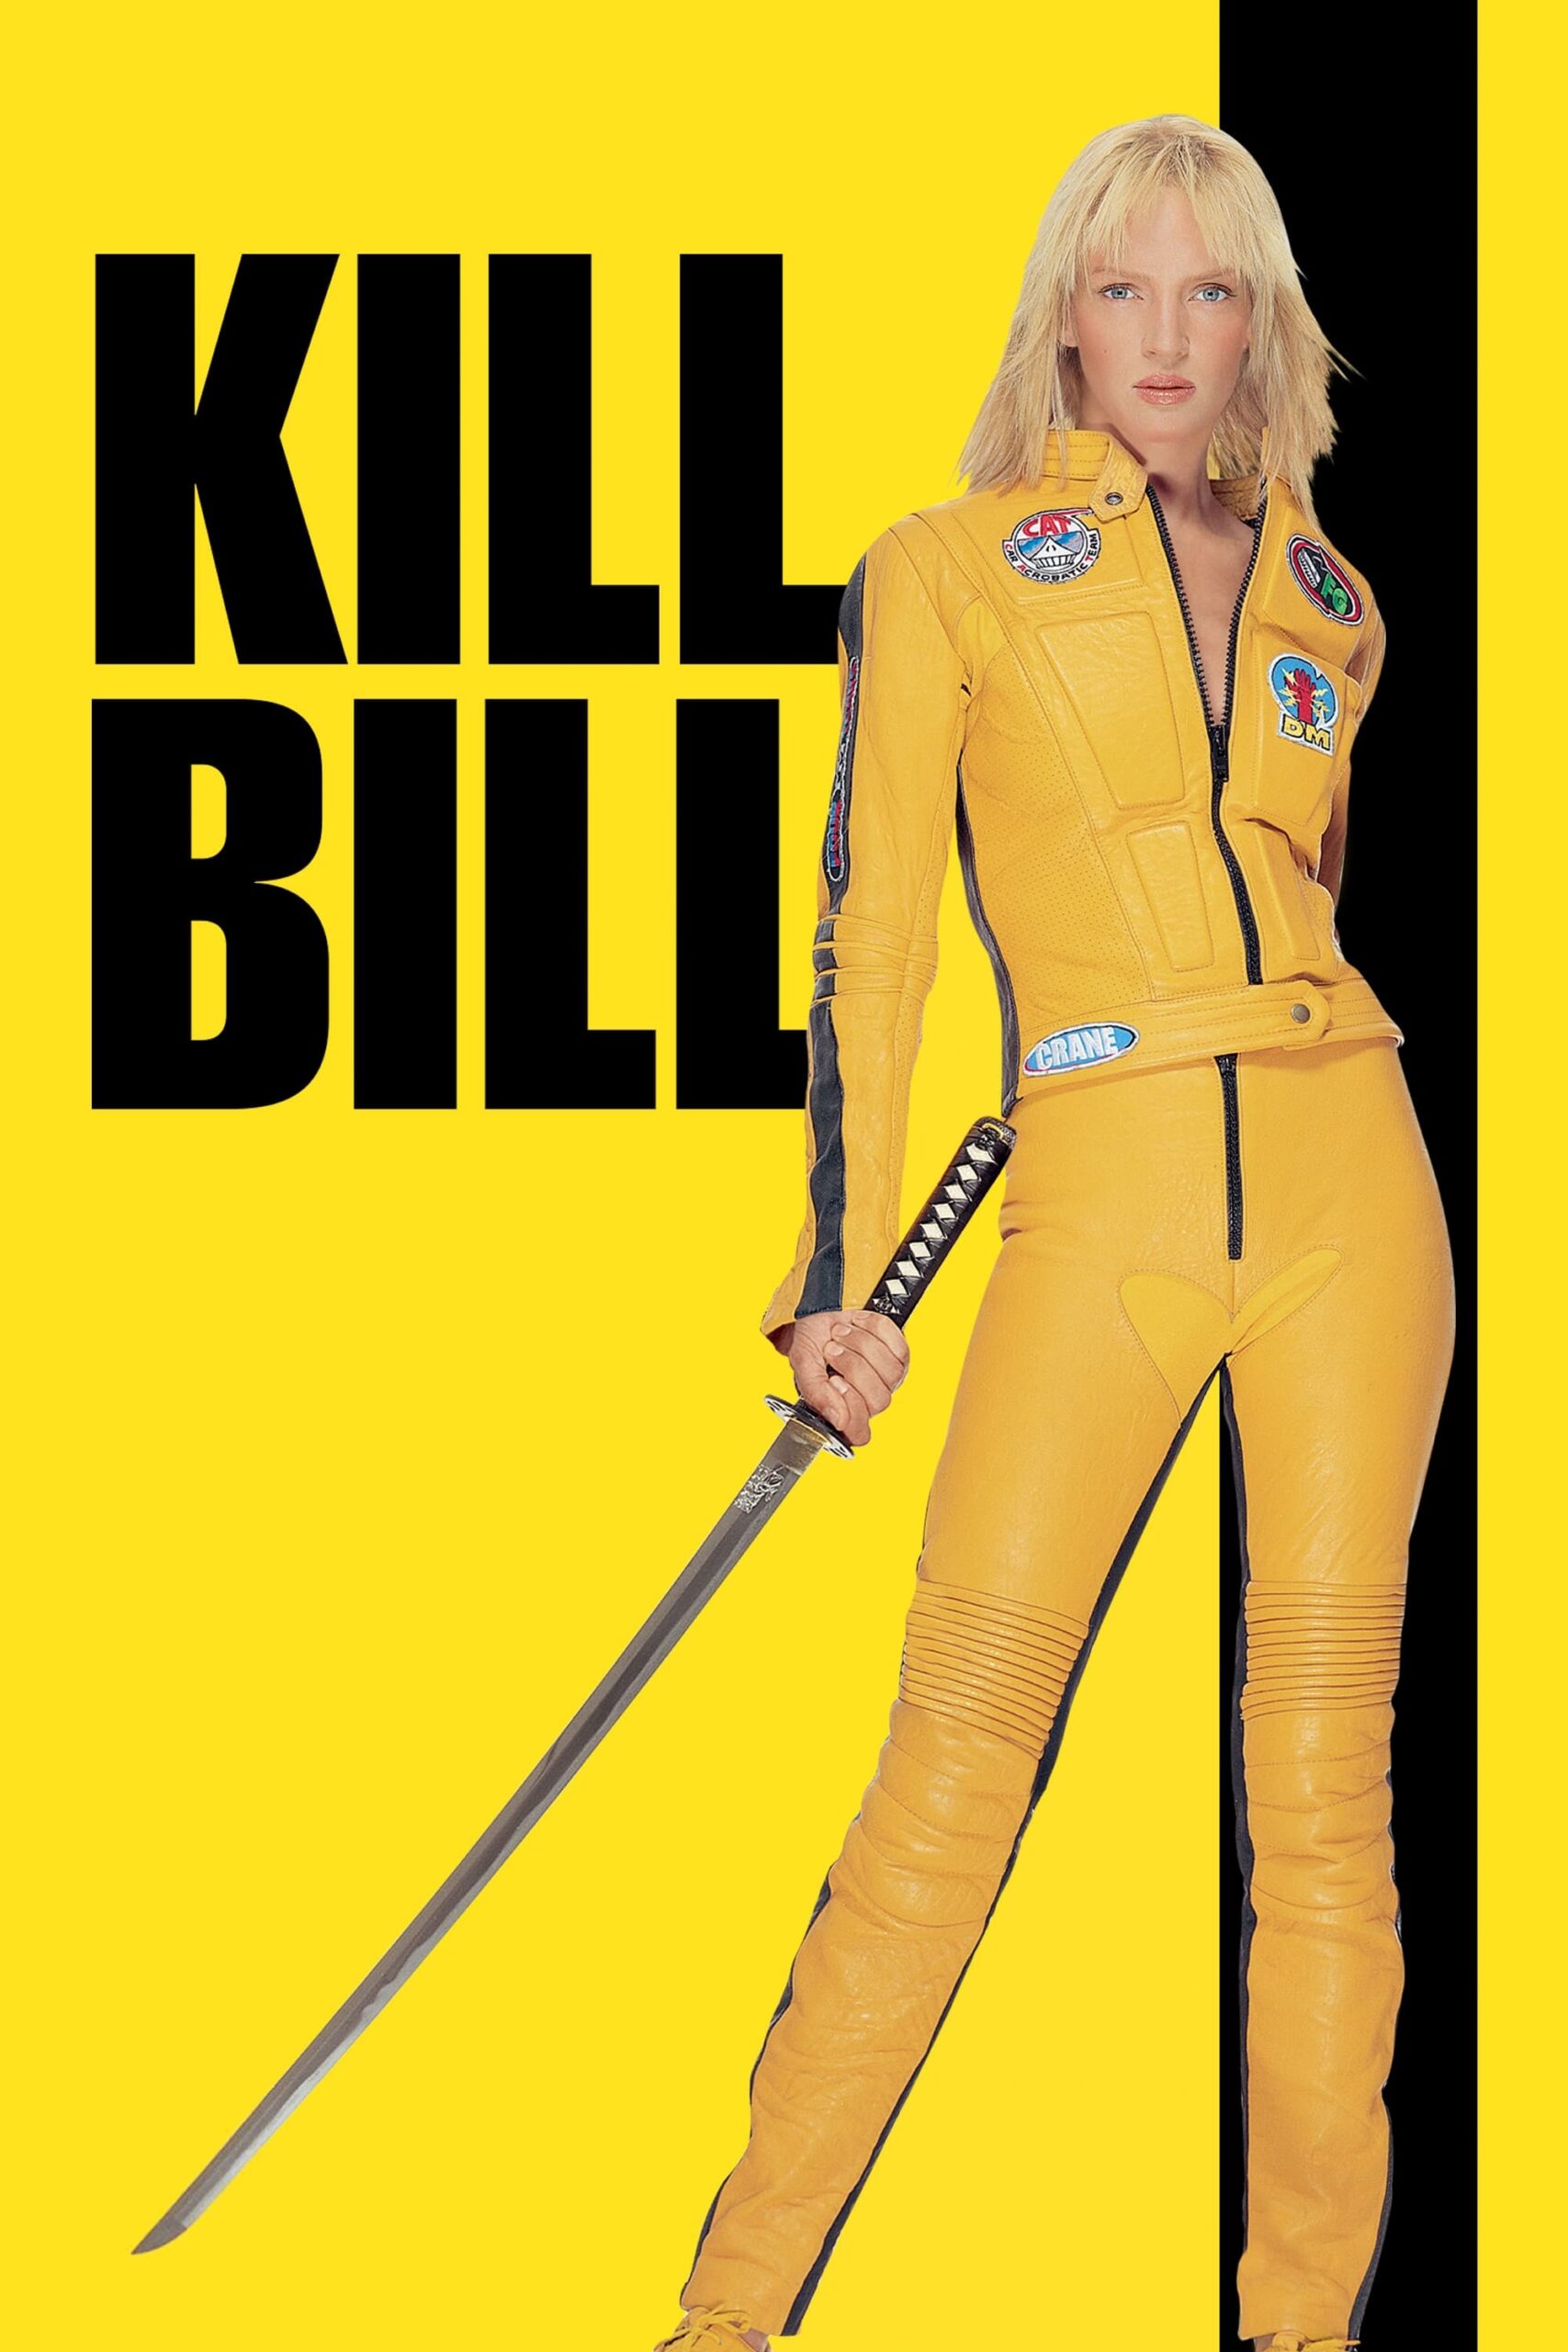 FUCK MEN FUCK MEN FUCK MEN aka Review of Kill Bill (2003 movie) aka Kill ALL MEN GAHH